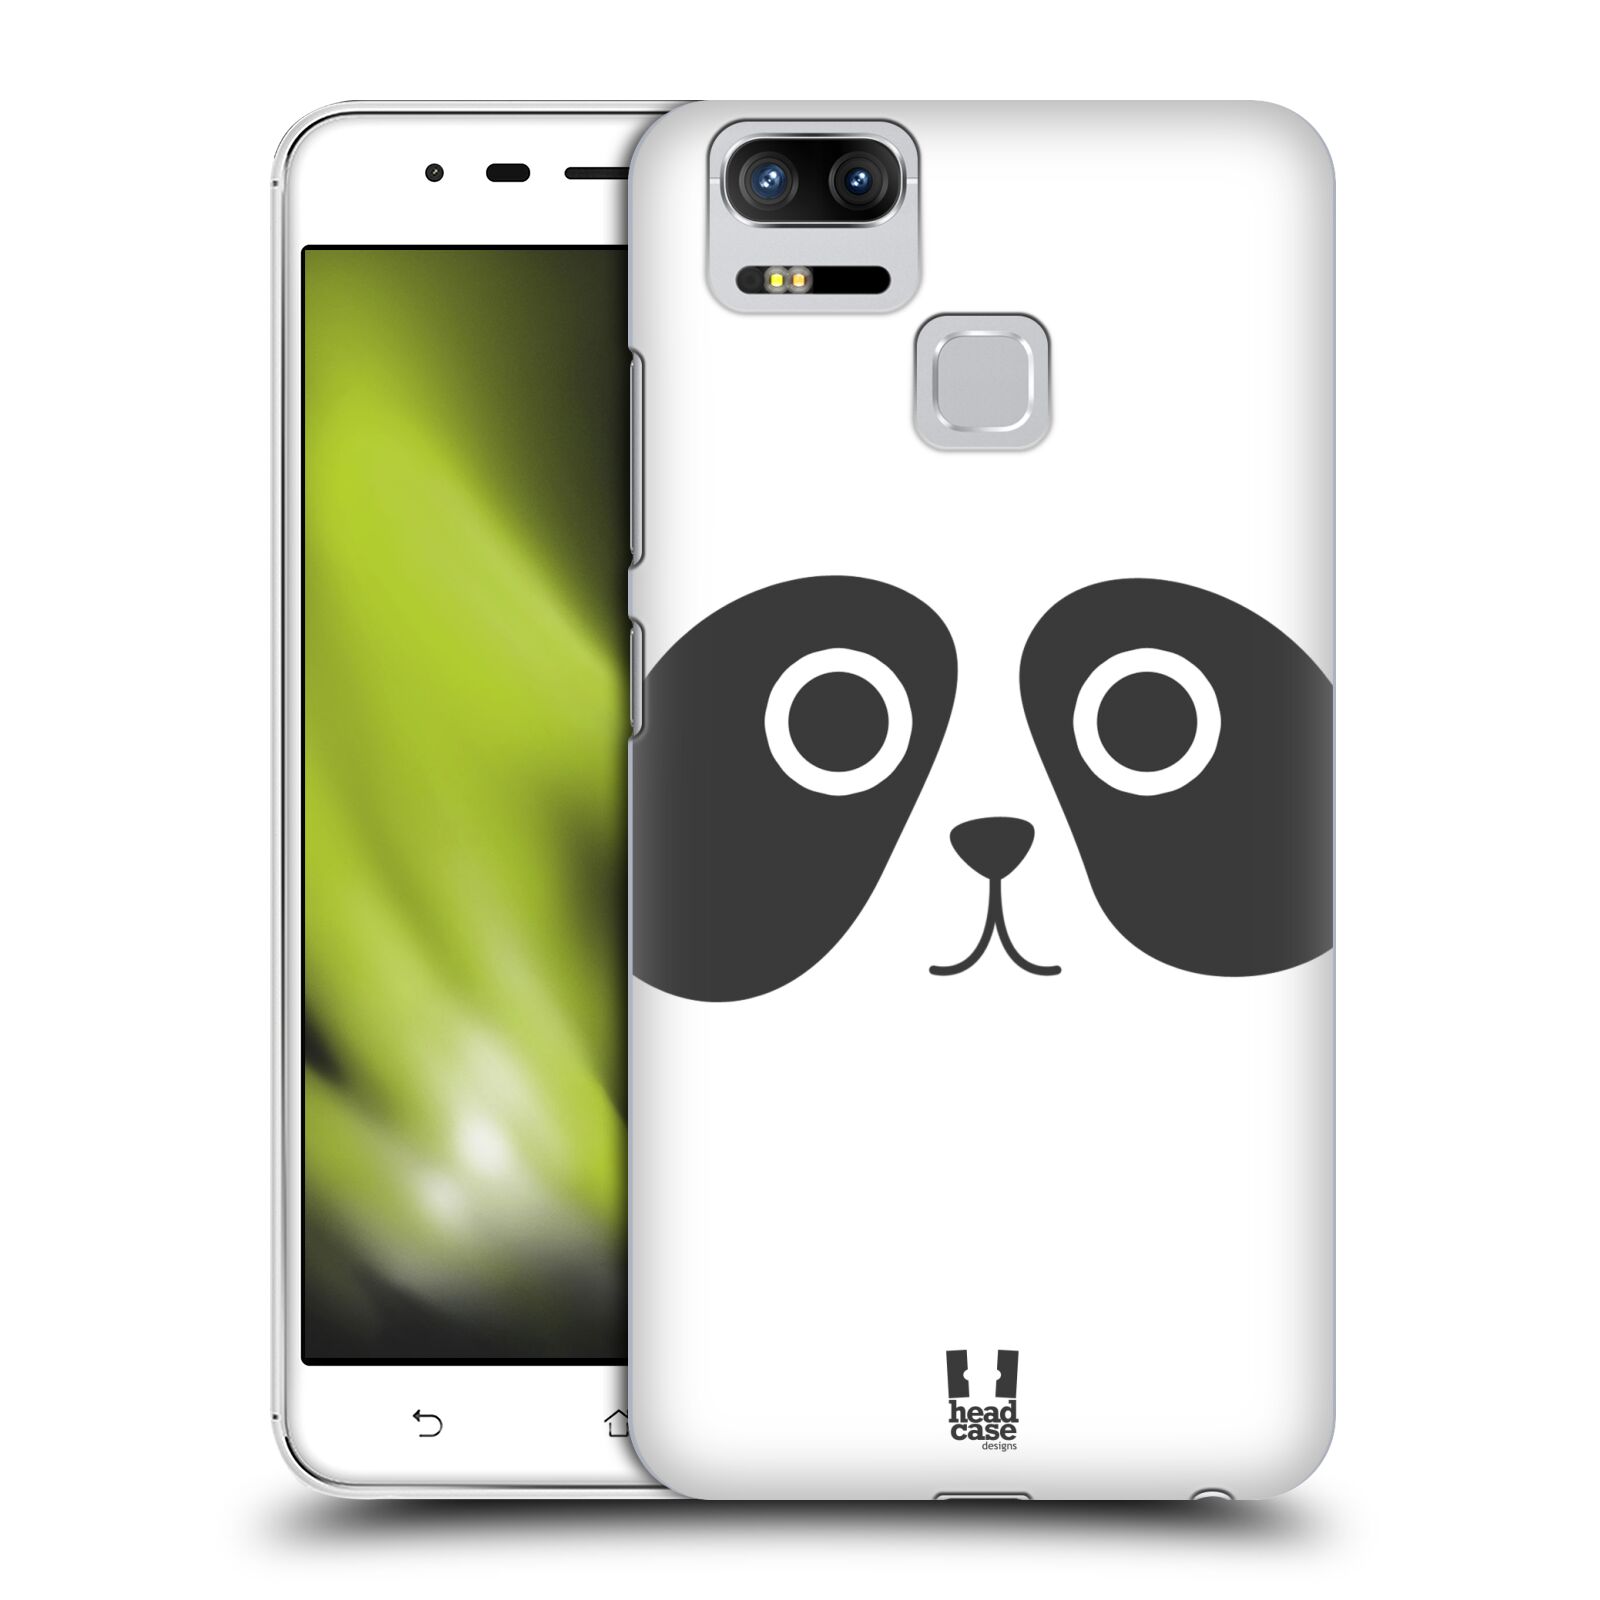 HEAD CASE plastový obal na mobil Asus Zenfone 3 Zoom ZE553KL vzor Cartoon Karikatura kreslená zvířátka panda